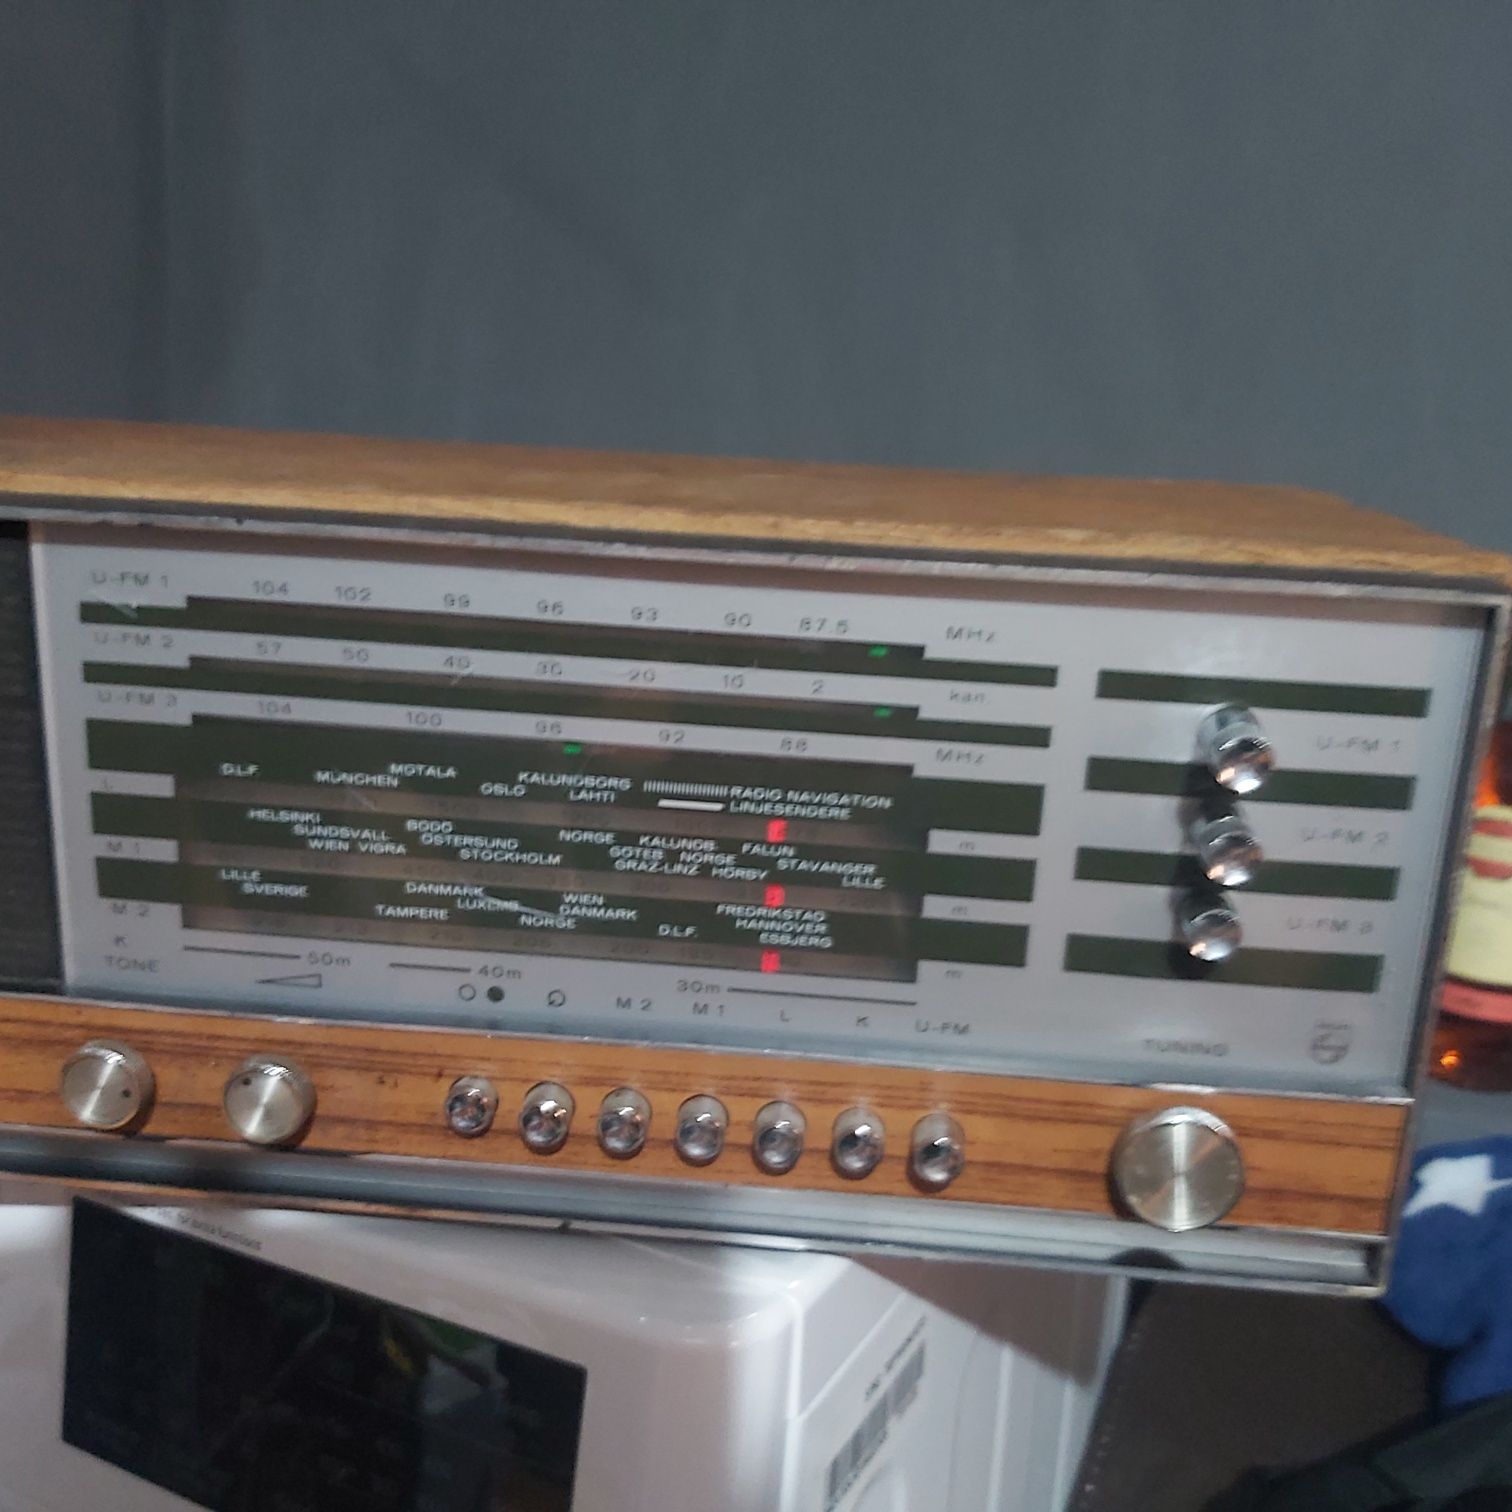 Radio Philips vintage